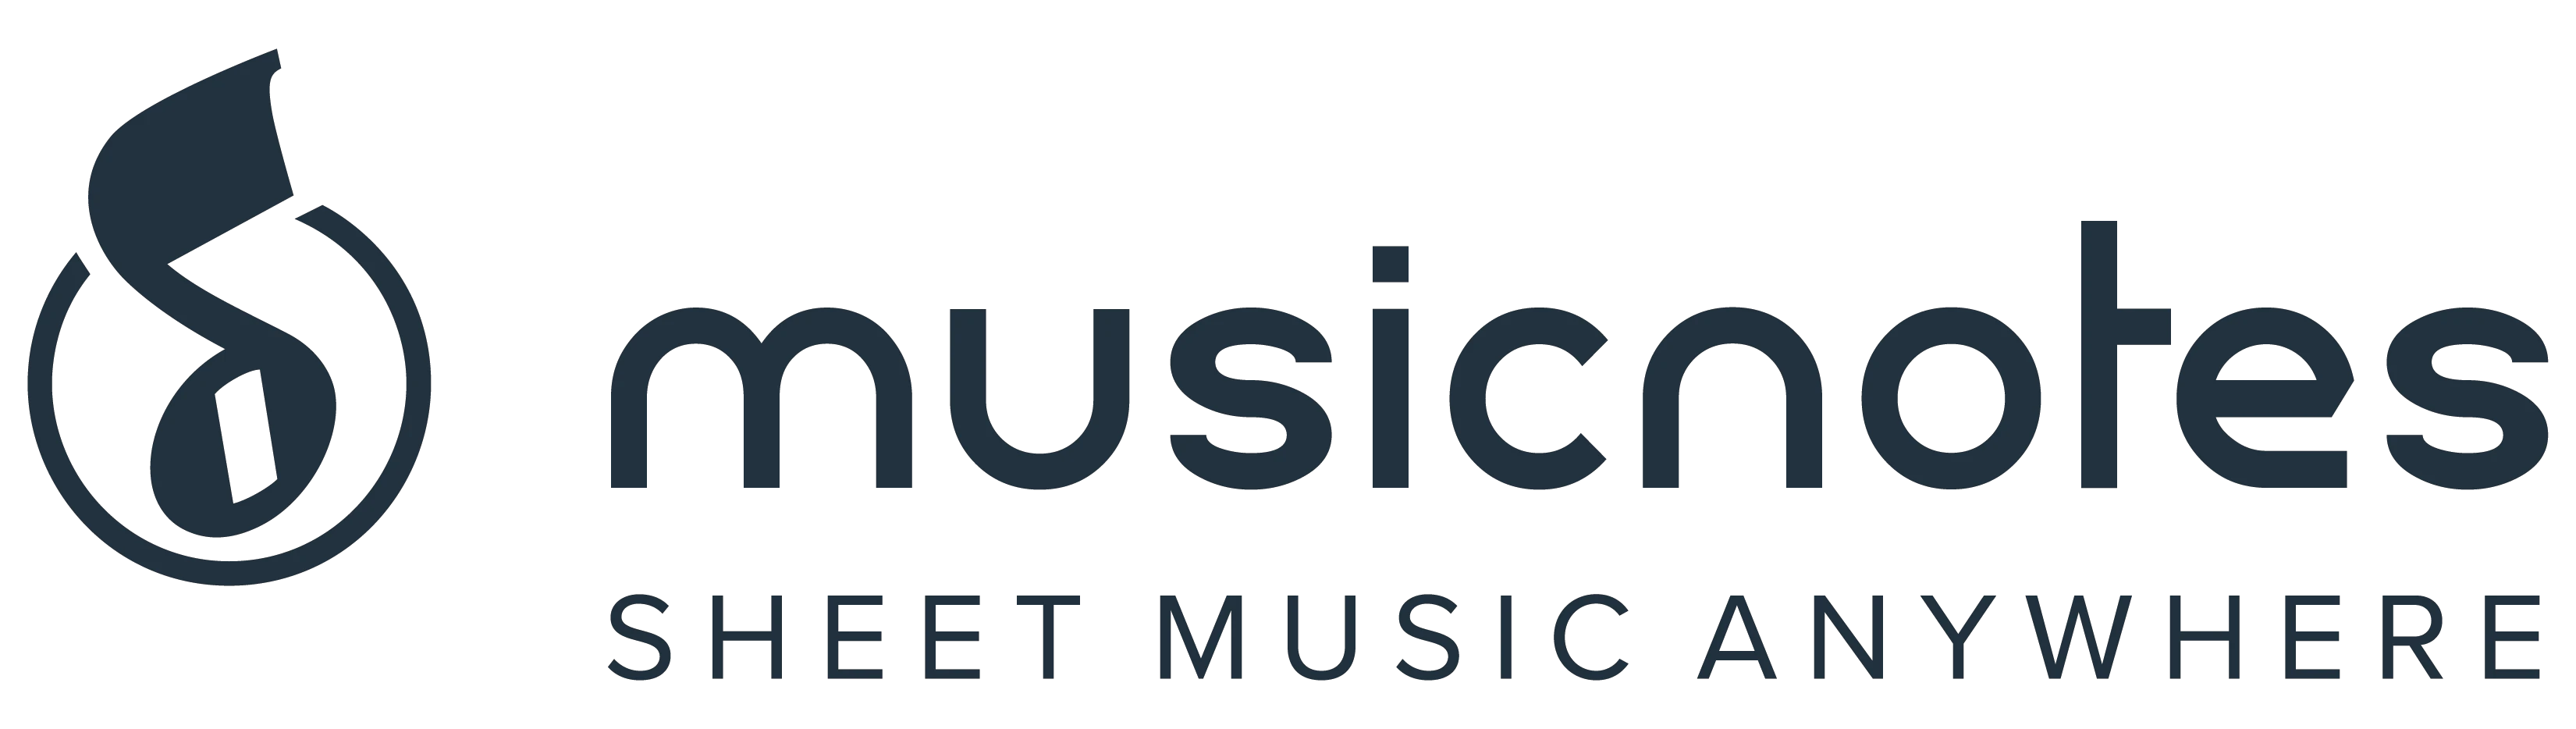 musicnotes.com